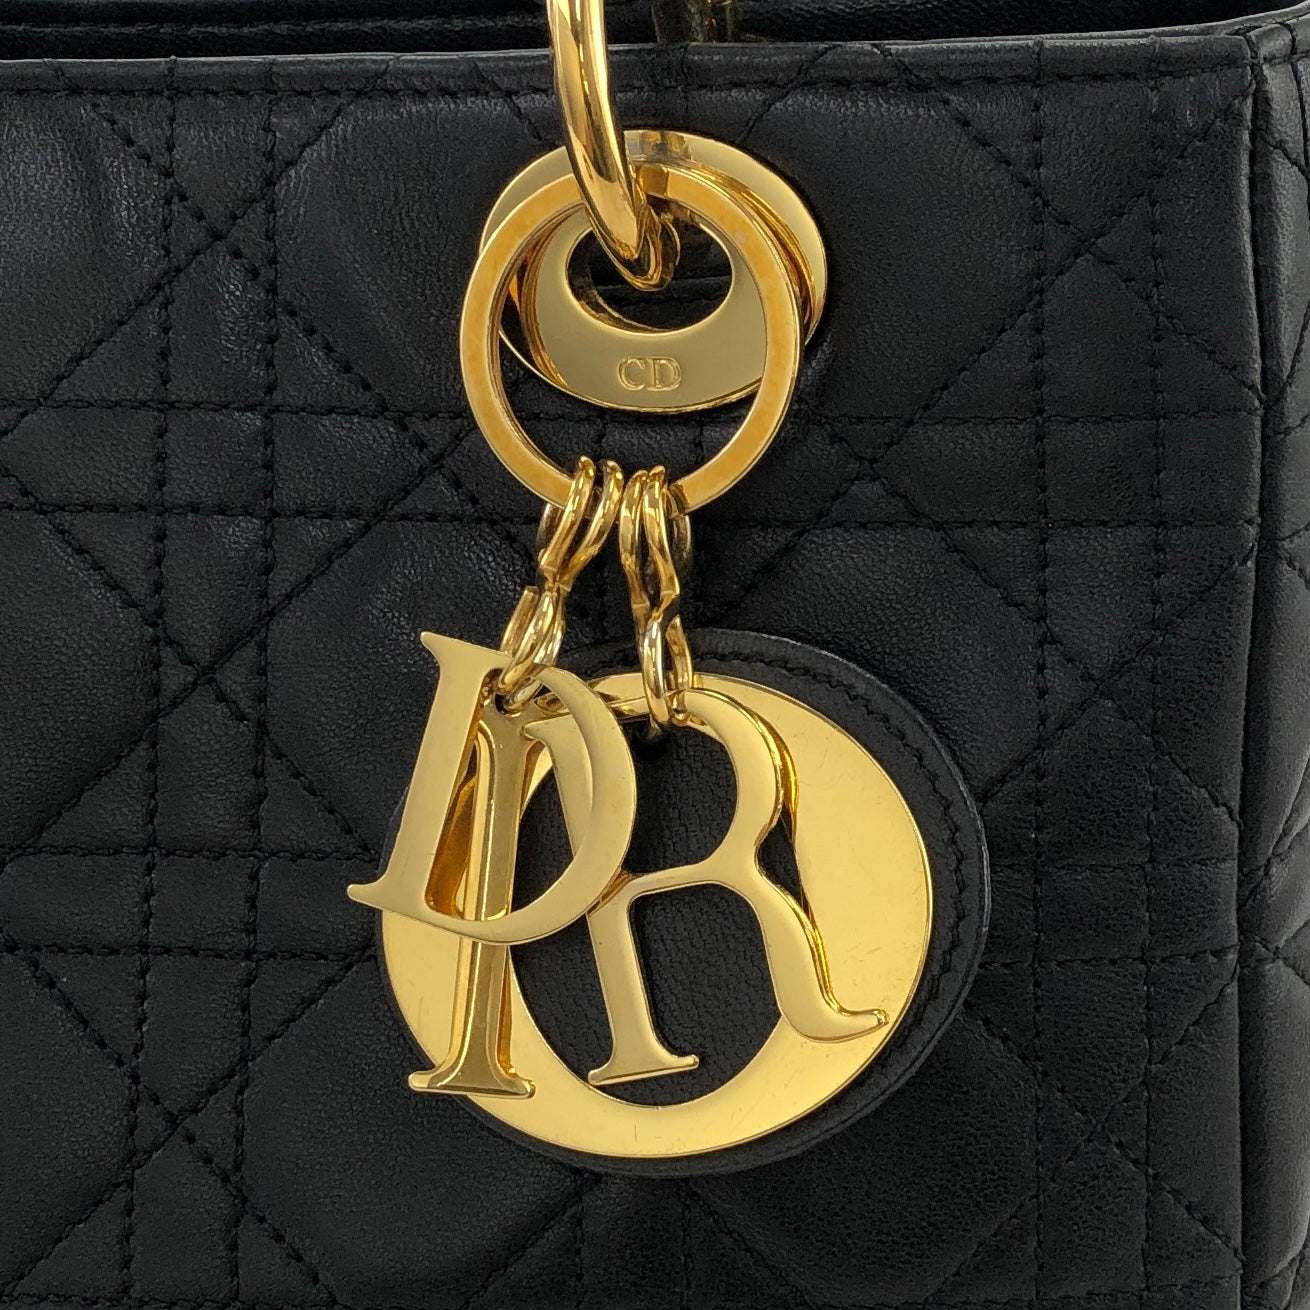 Christian Dior Cannage Ladydior Leather Two-way Handbag Shoulder bag Black Vintage khzzs3